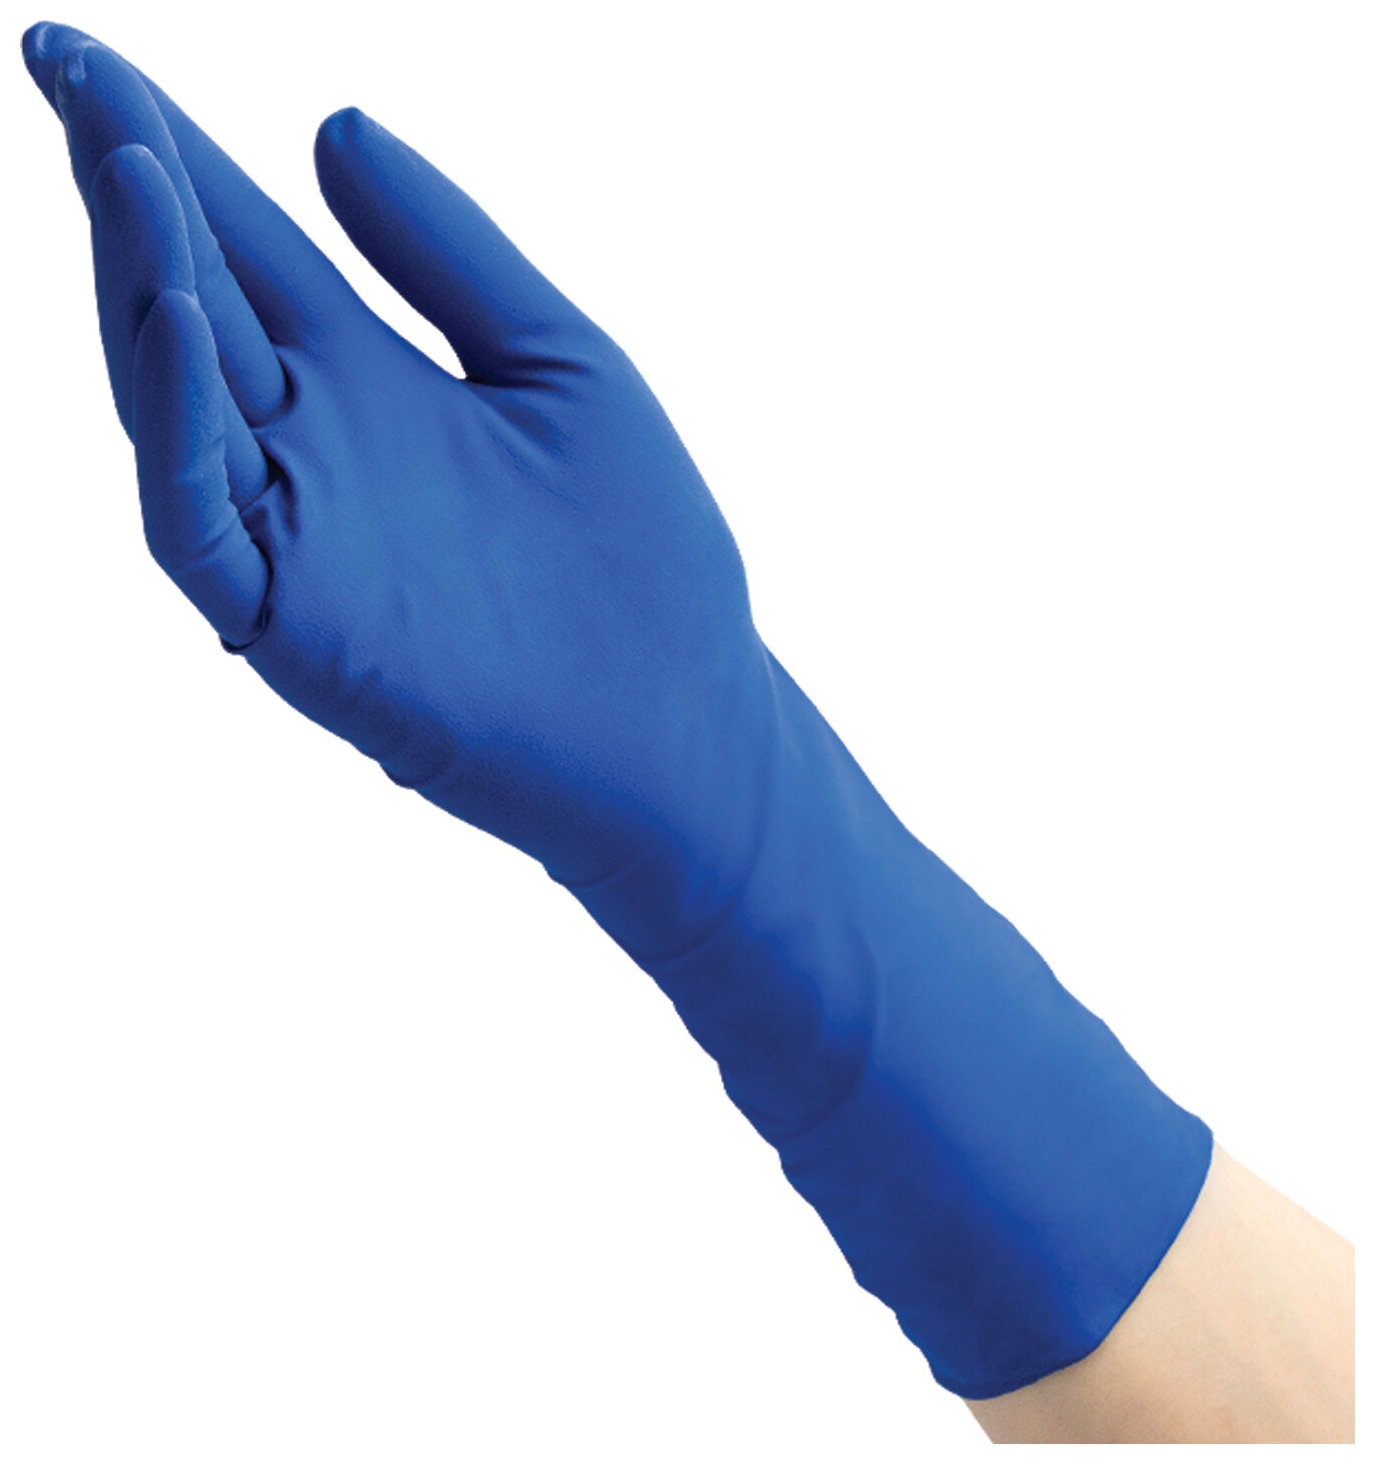 Перчатки латексные смотровые Benovy High Risk 25 пар (50 шт.), неопудренные, повышенной прочности, размер XL (очень большой), синие, -